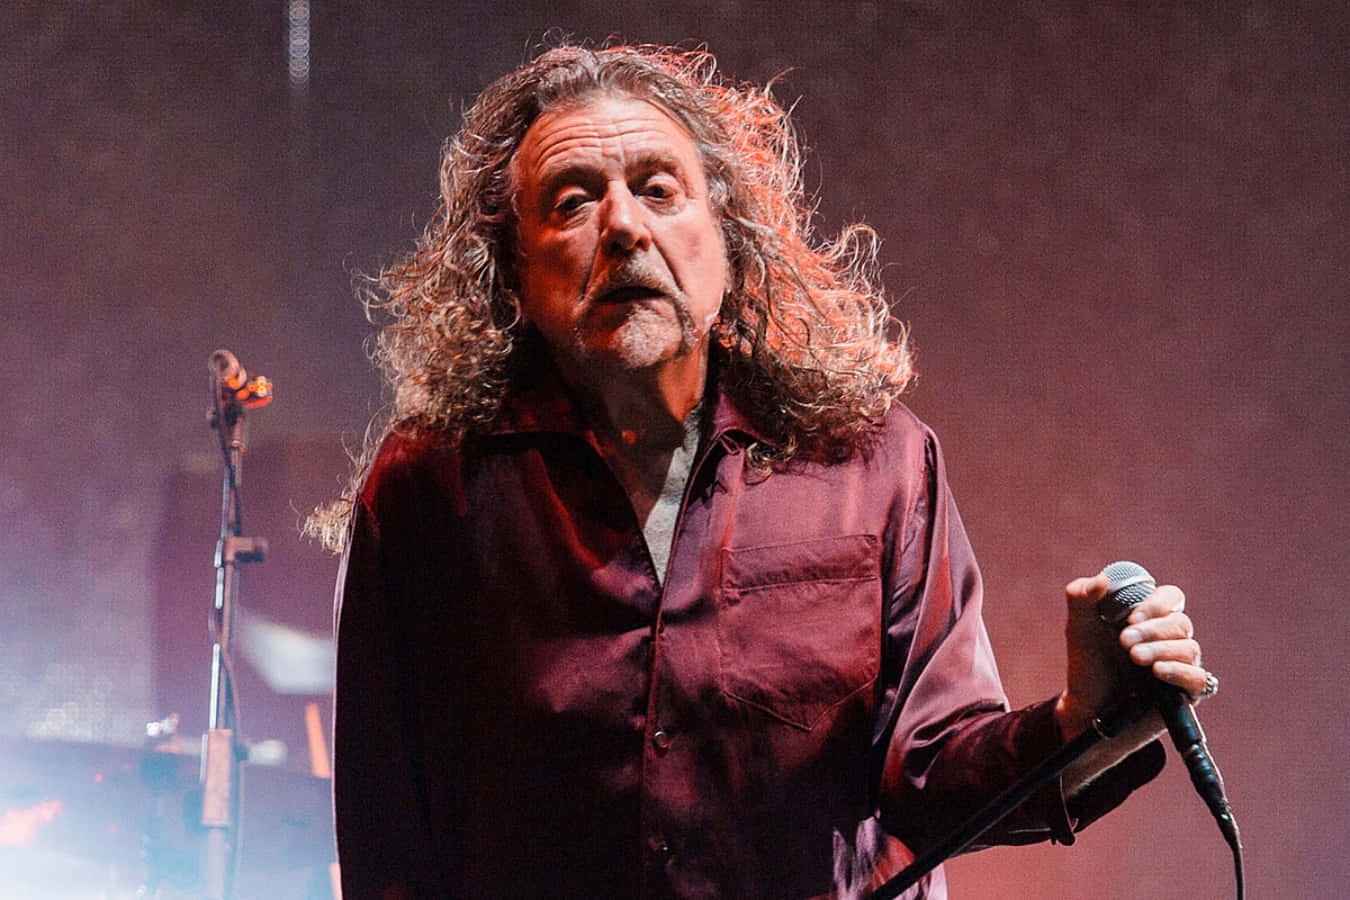 Robert Plant, the legendary front man of Led Zeppelin